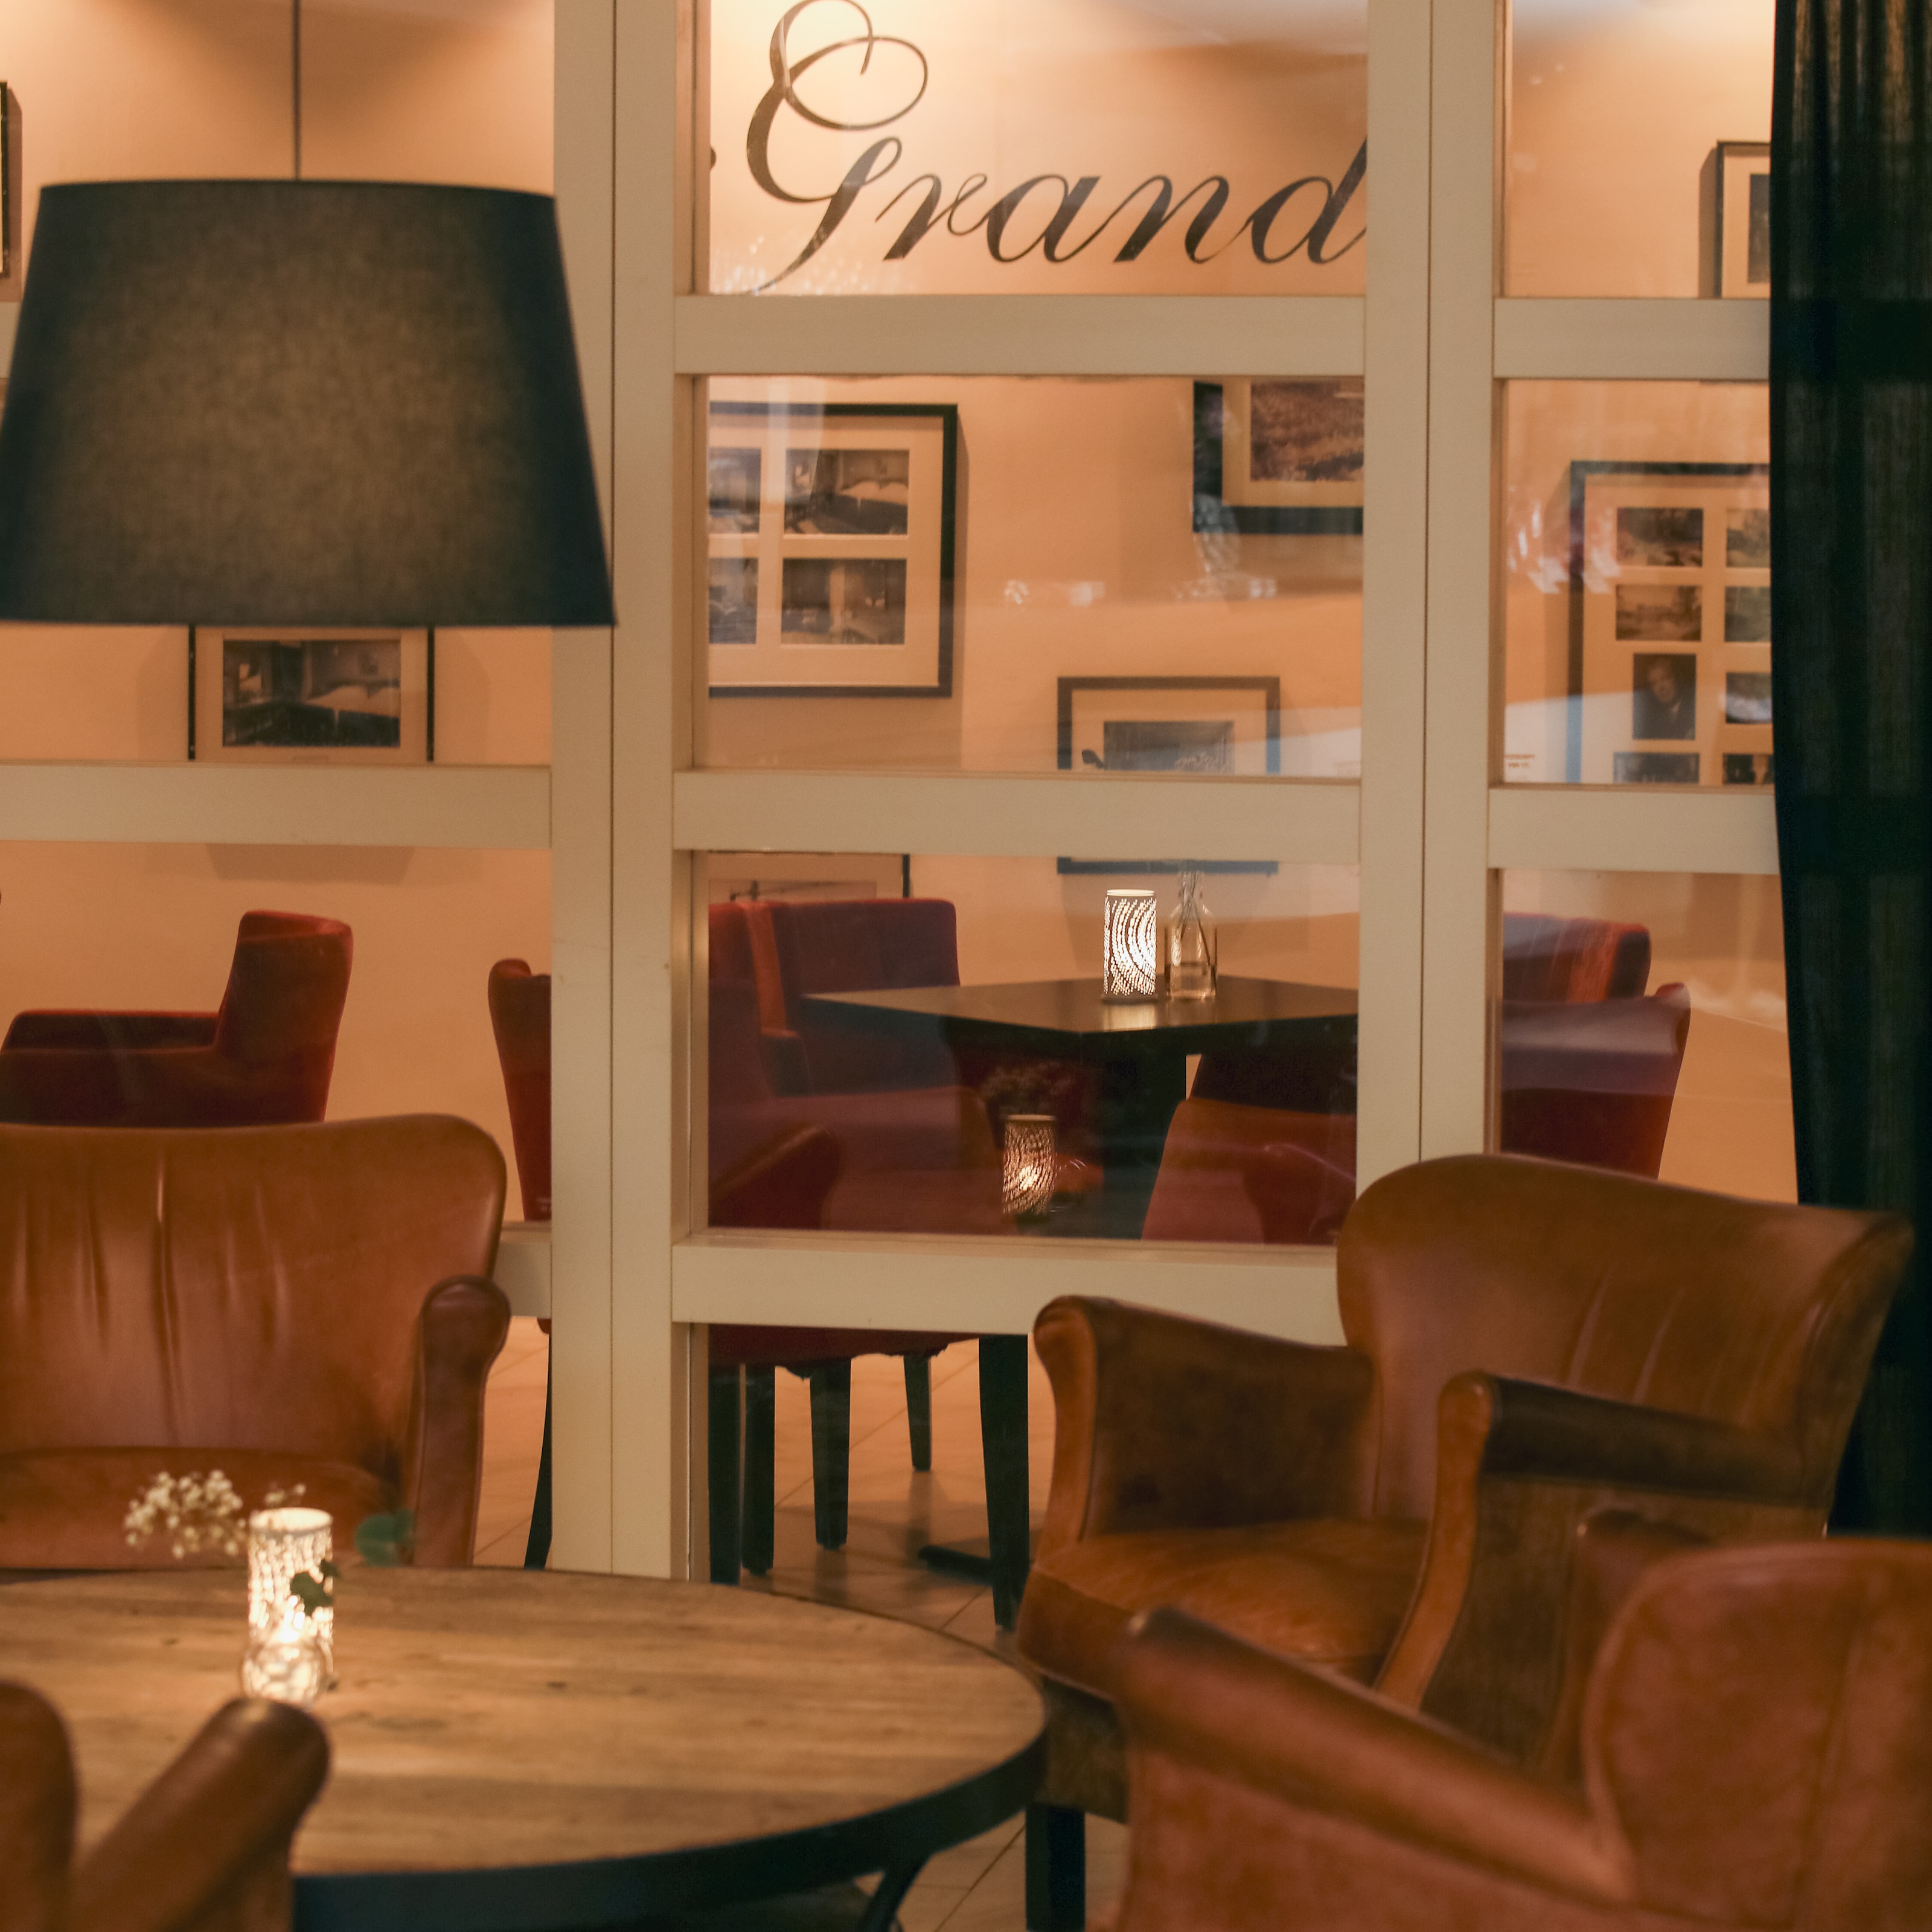 1 natt för 2 p, dubbelrum med frukost hos First Hotel Grand i Falun (16 av 18)